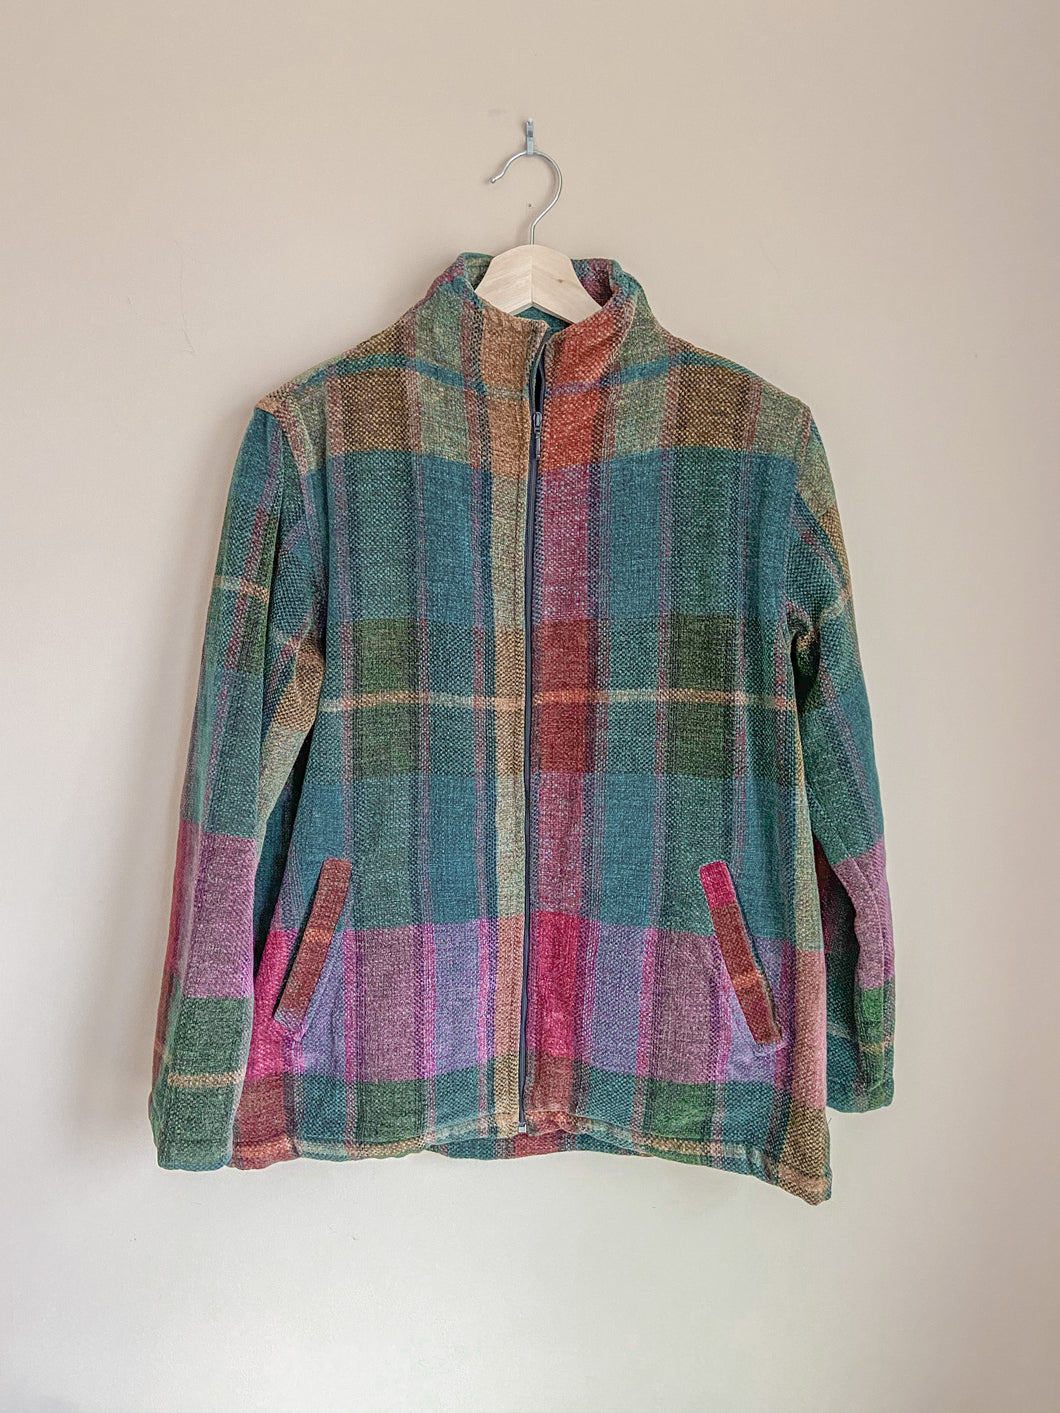 Vintage Plaid Rainbow Jacket